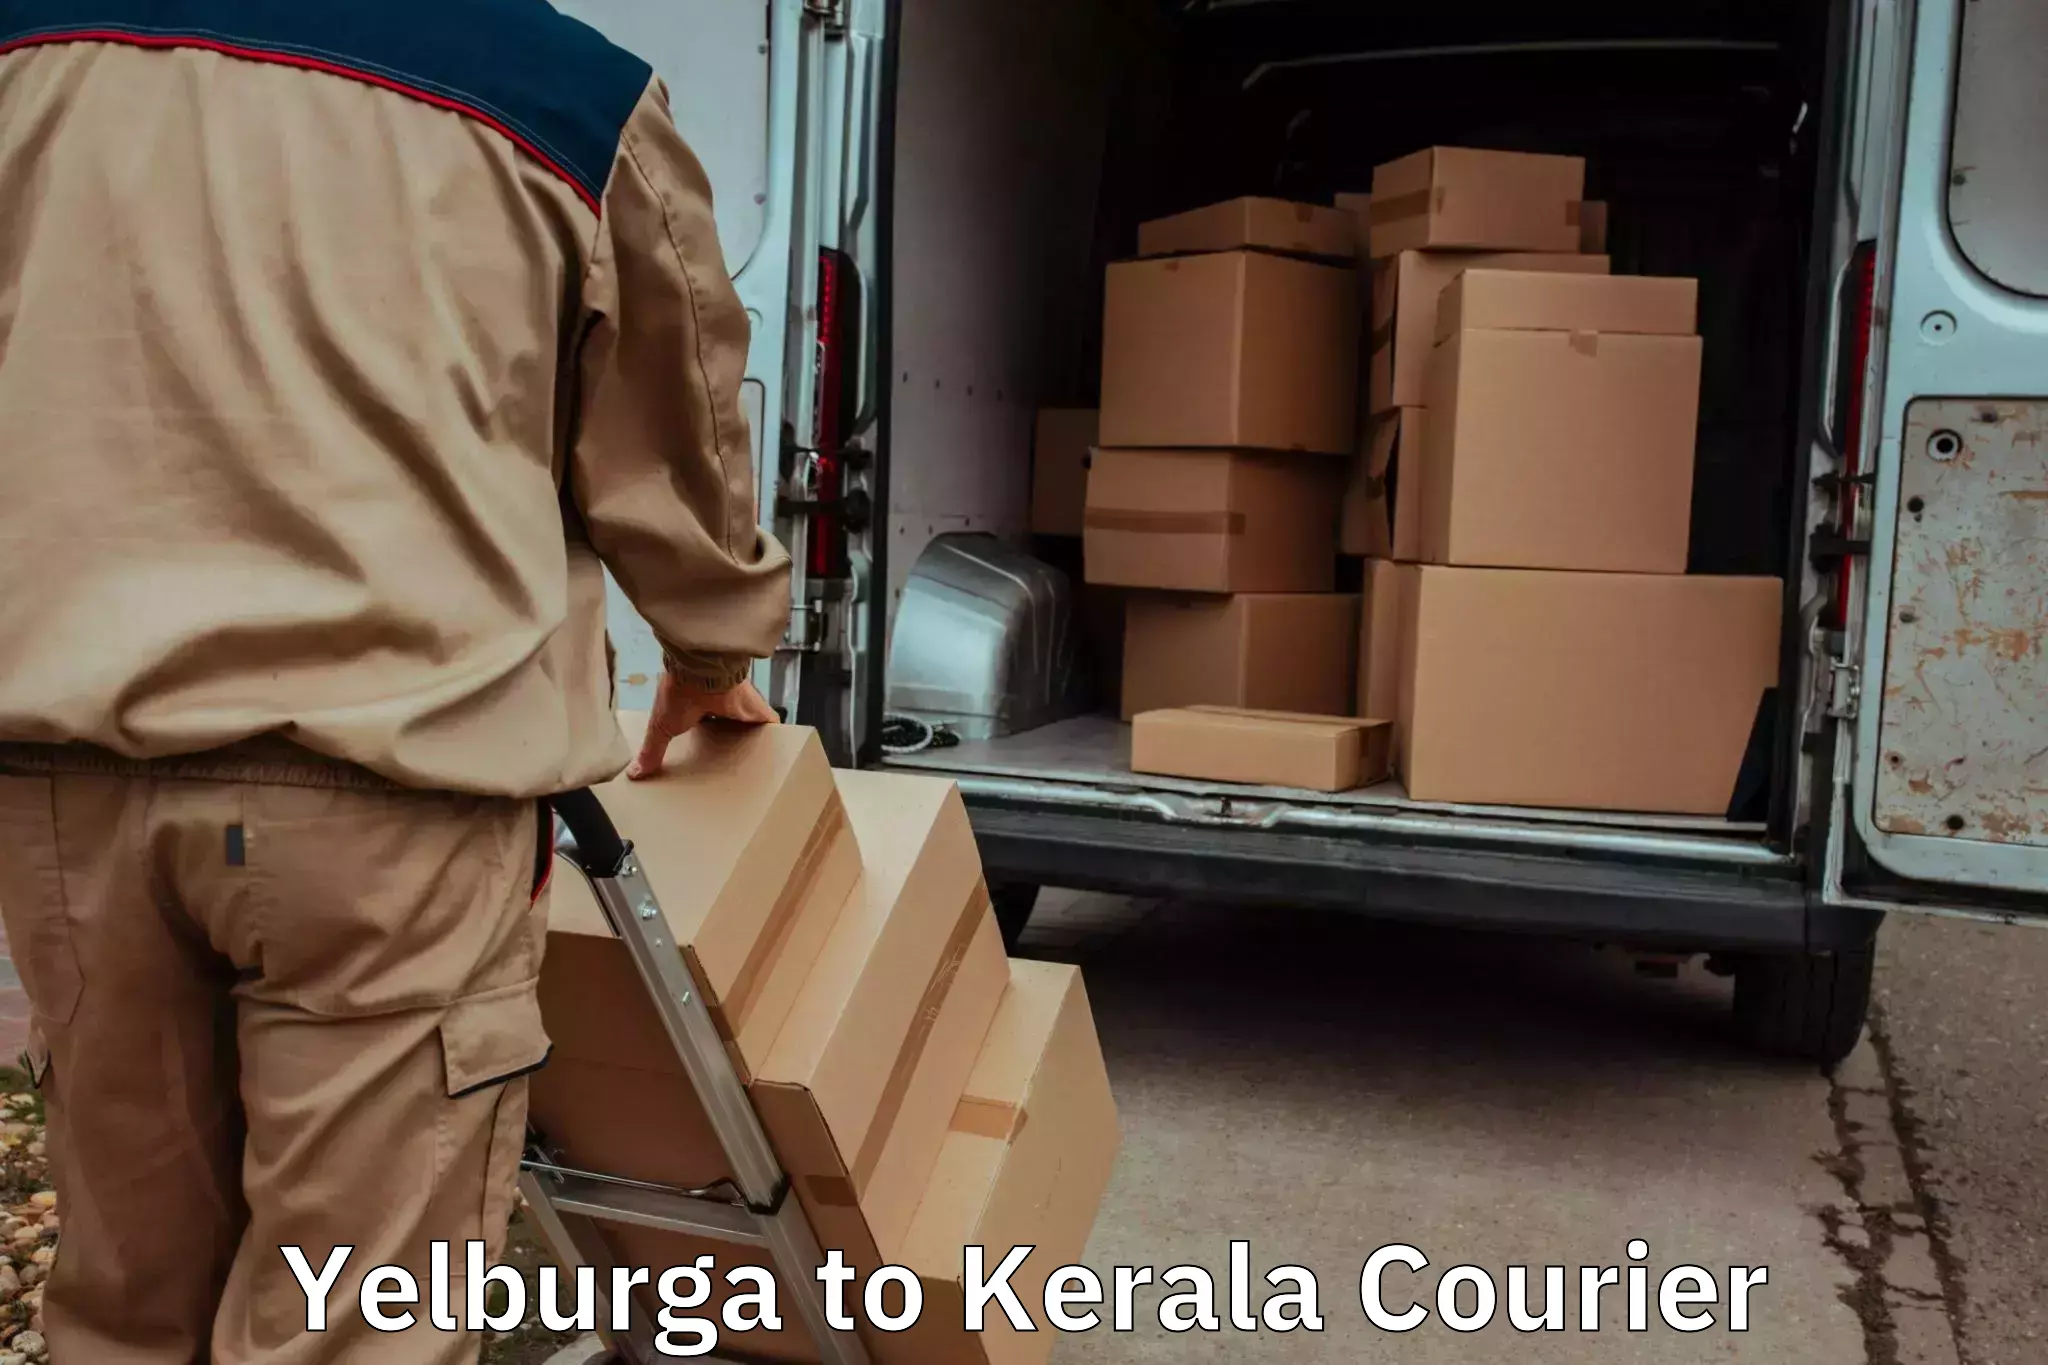 Furniture transport service Yelburga to Kerala